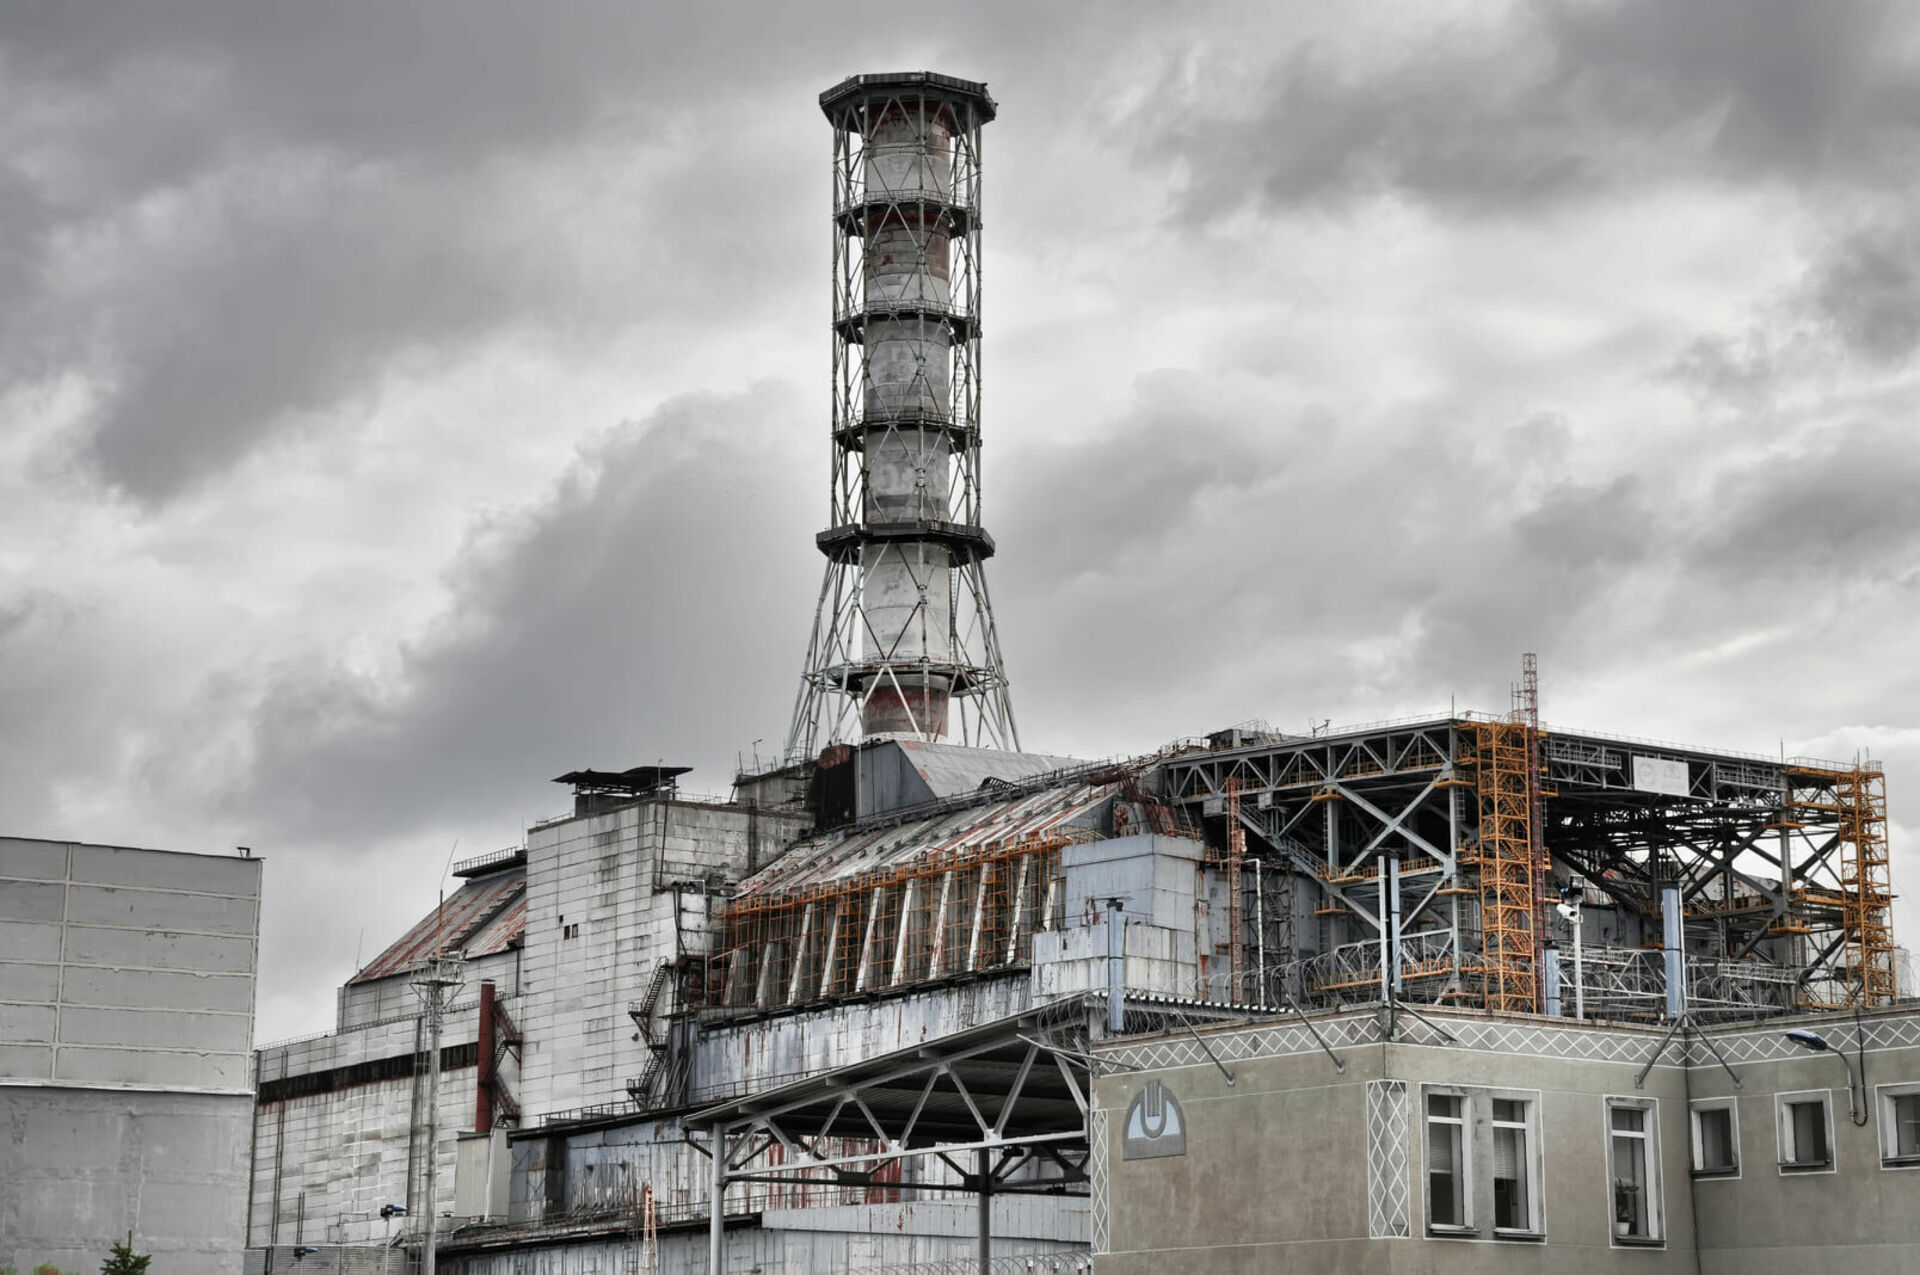 Чернобыльская атомная электростанция. Атомная станция Чернобыль. Атомная энергостанция Чернобыль. Припять станция АЭС. Припять реактор 4.